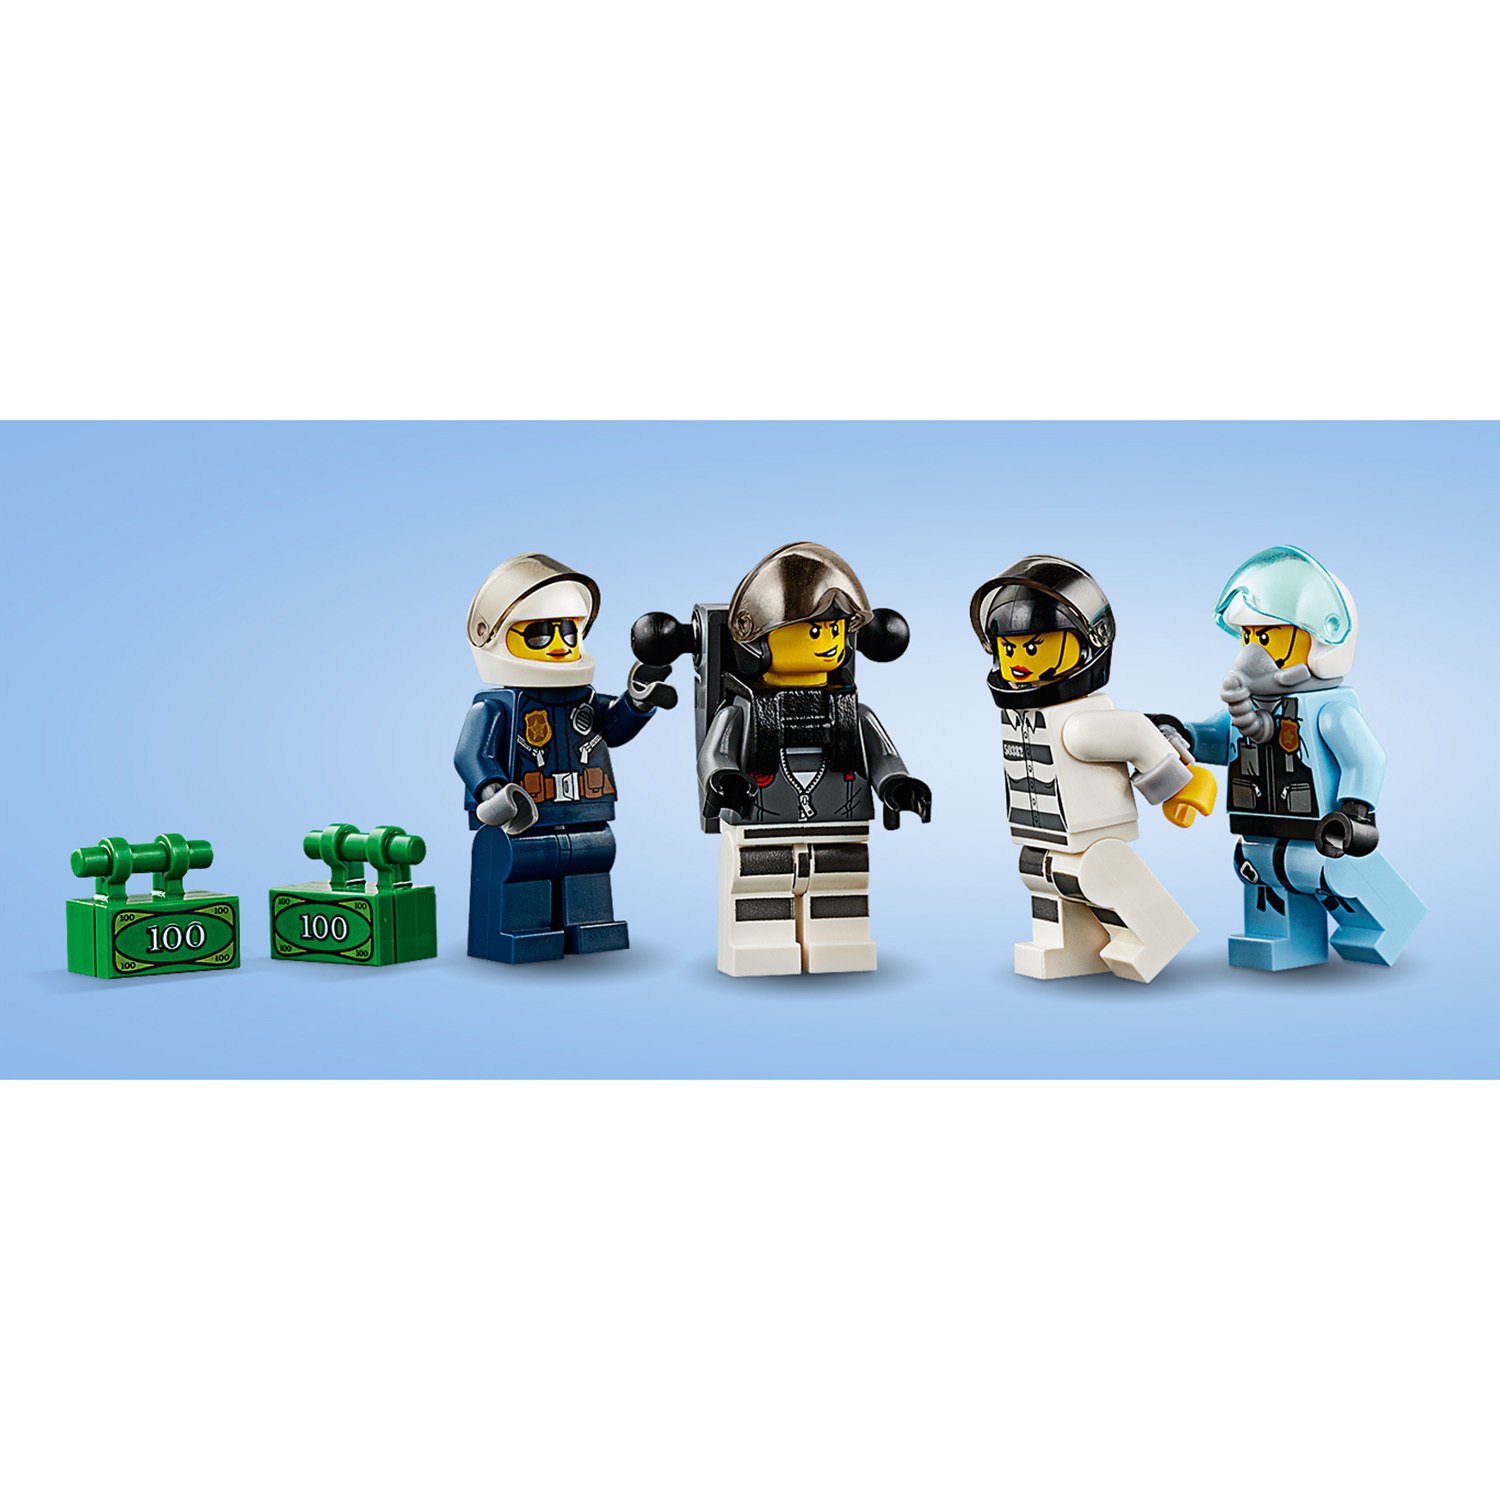 Конструктор LEGO City Police Воздушная полиция: арест парашютиста 60208